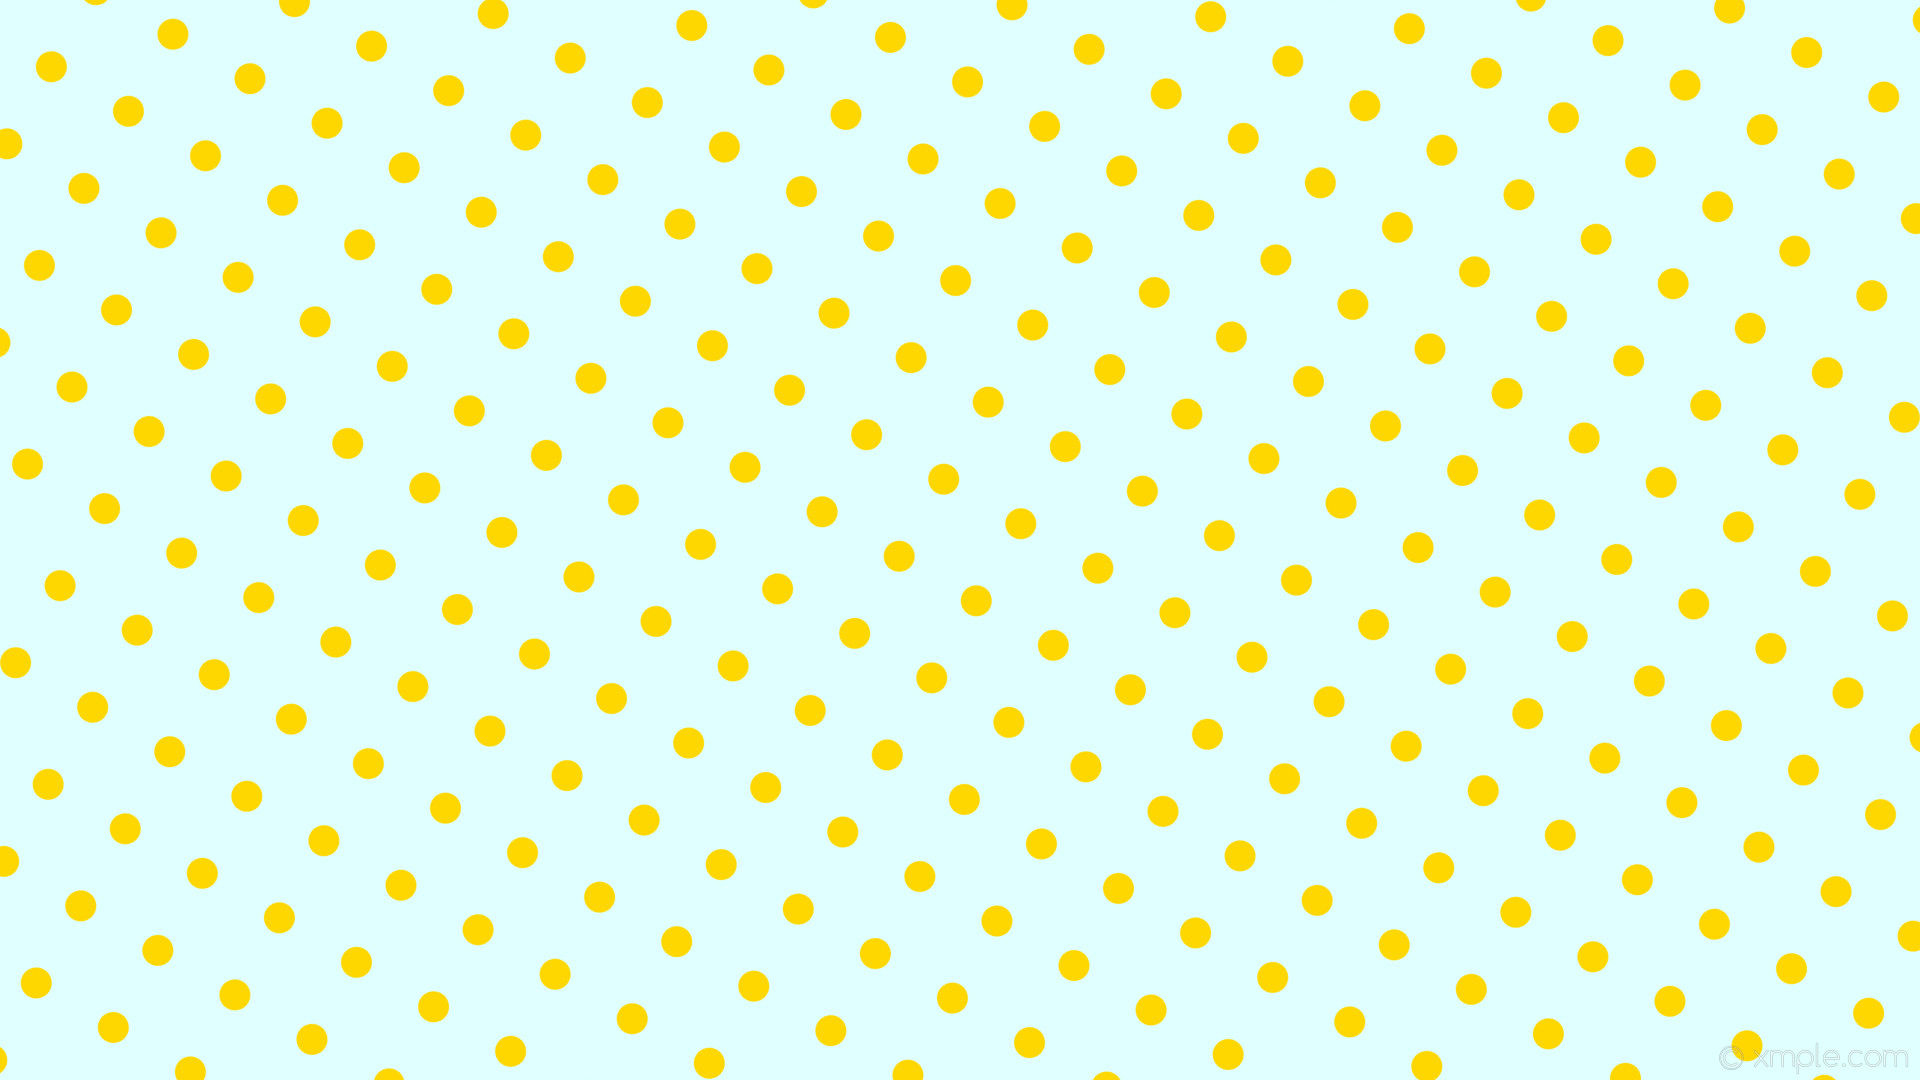 1920x1080 wallpaper spots dots yellow polka blue light cyan gold #e0ffff #ffd700 240Â°  31px